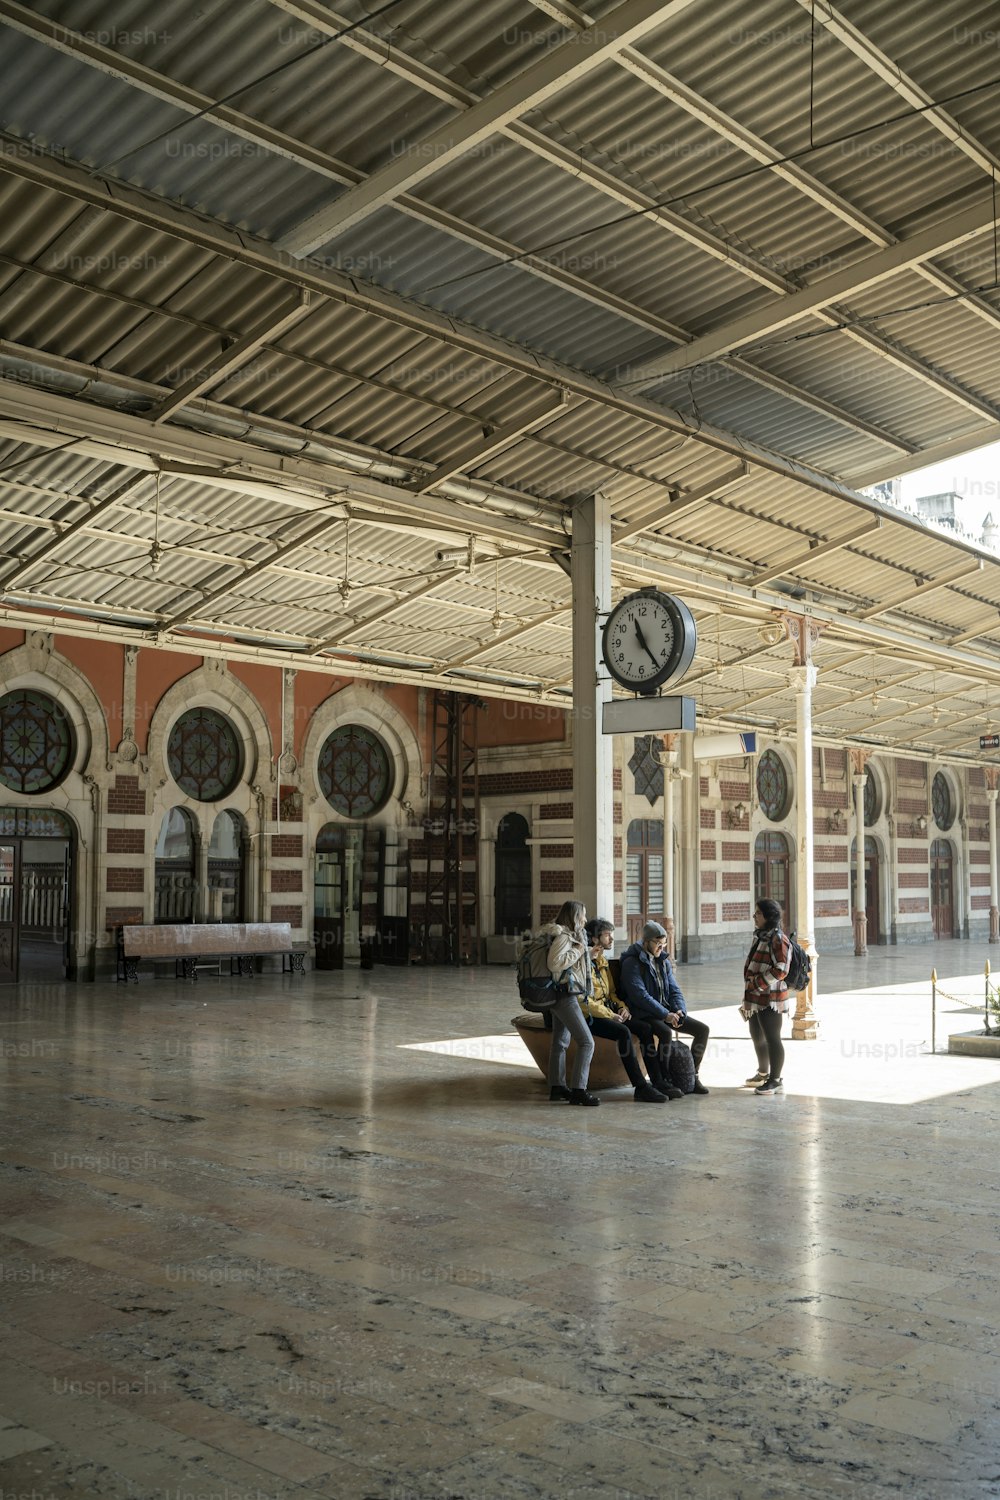 Un grupo de personas sentadas en un banco en una estación de tren